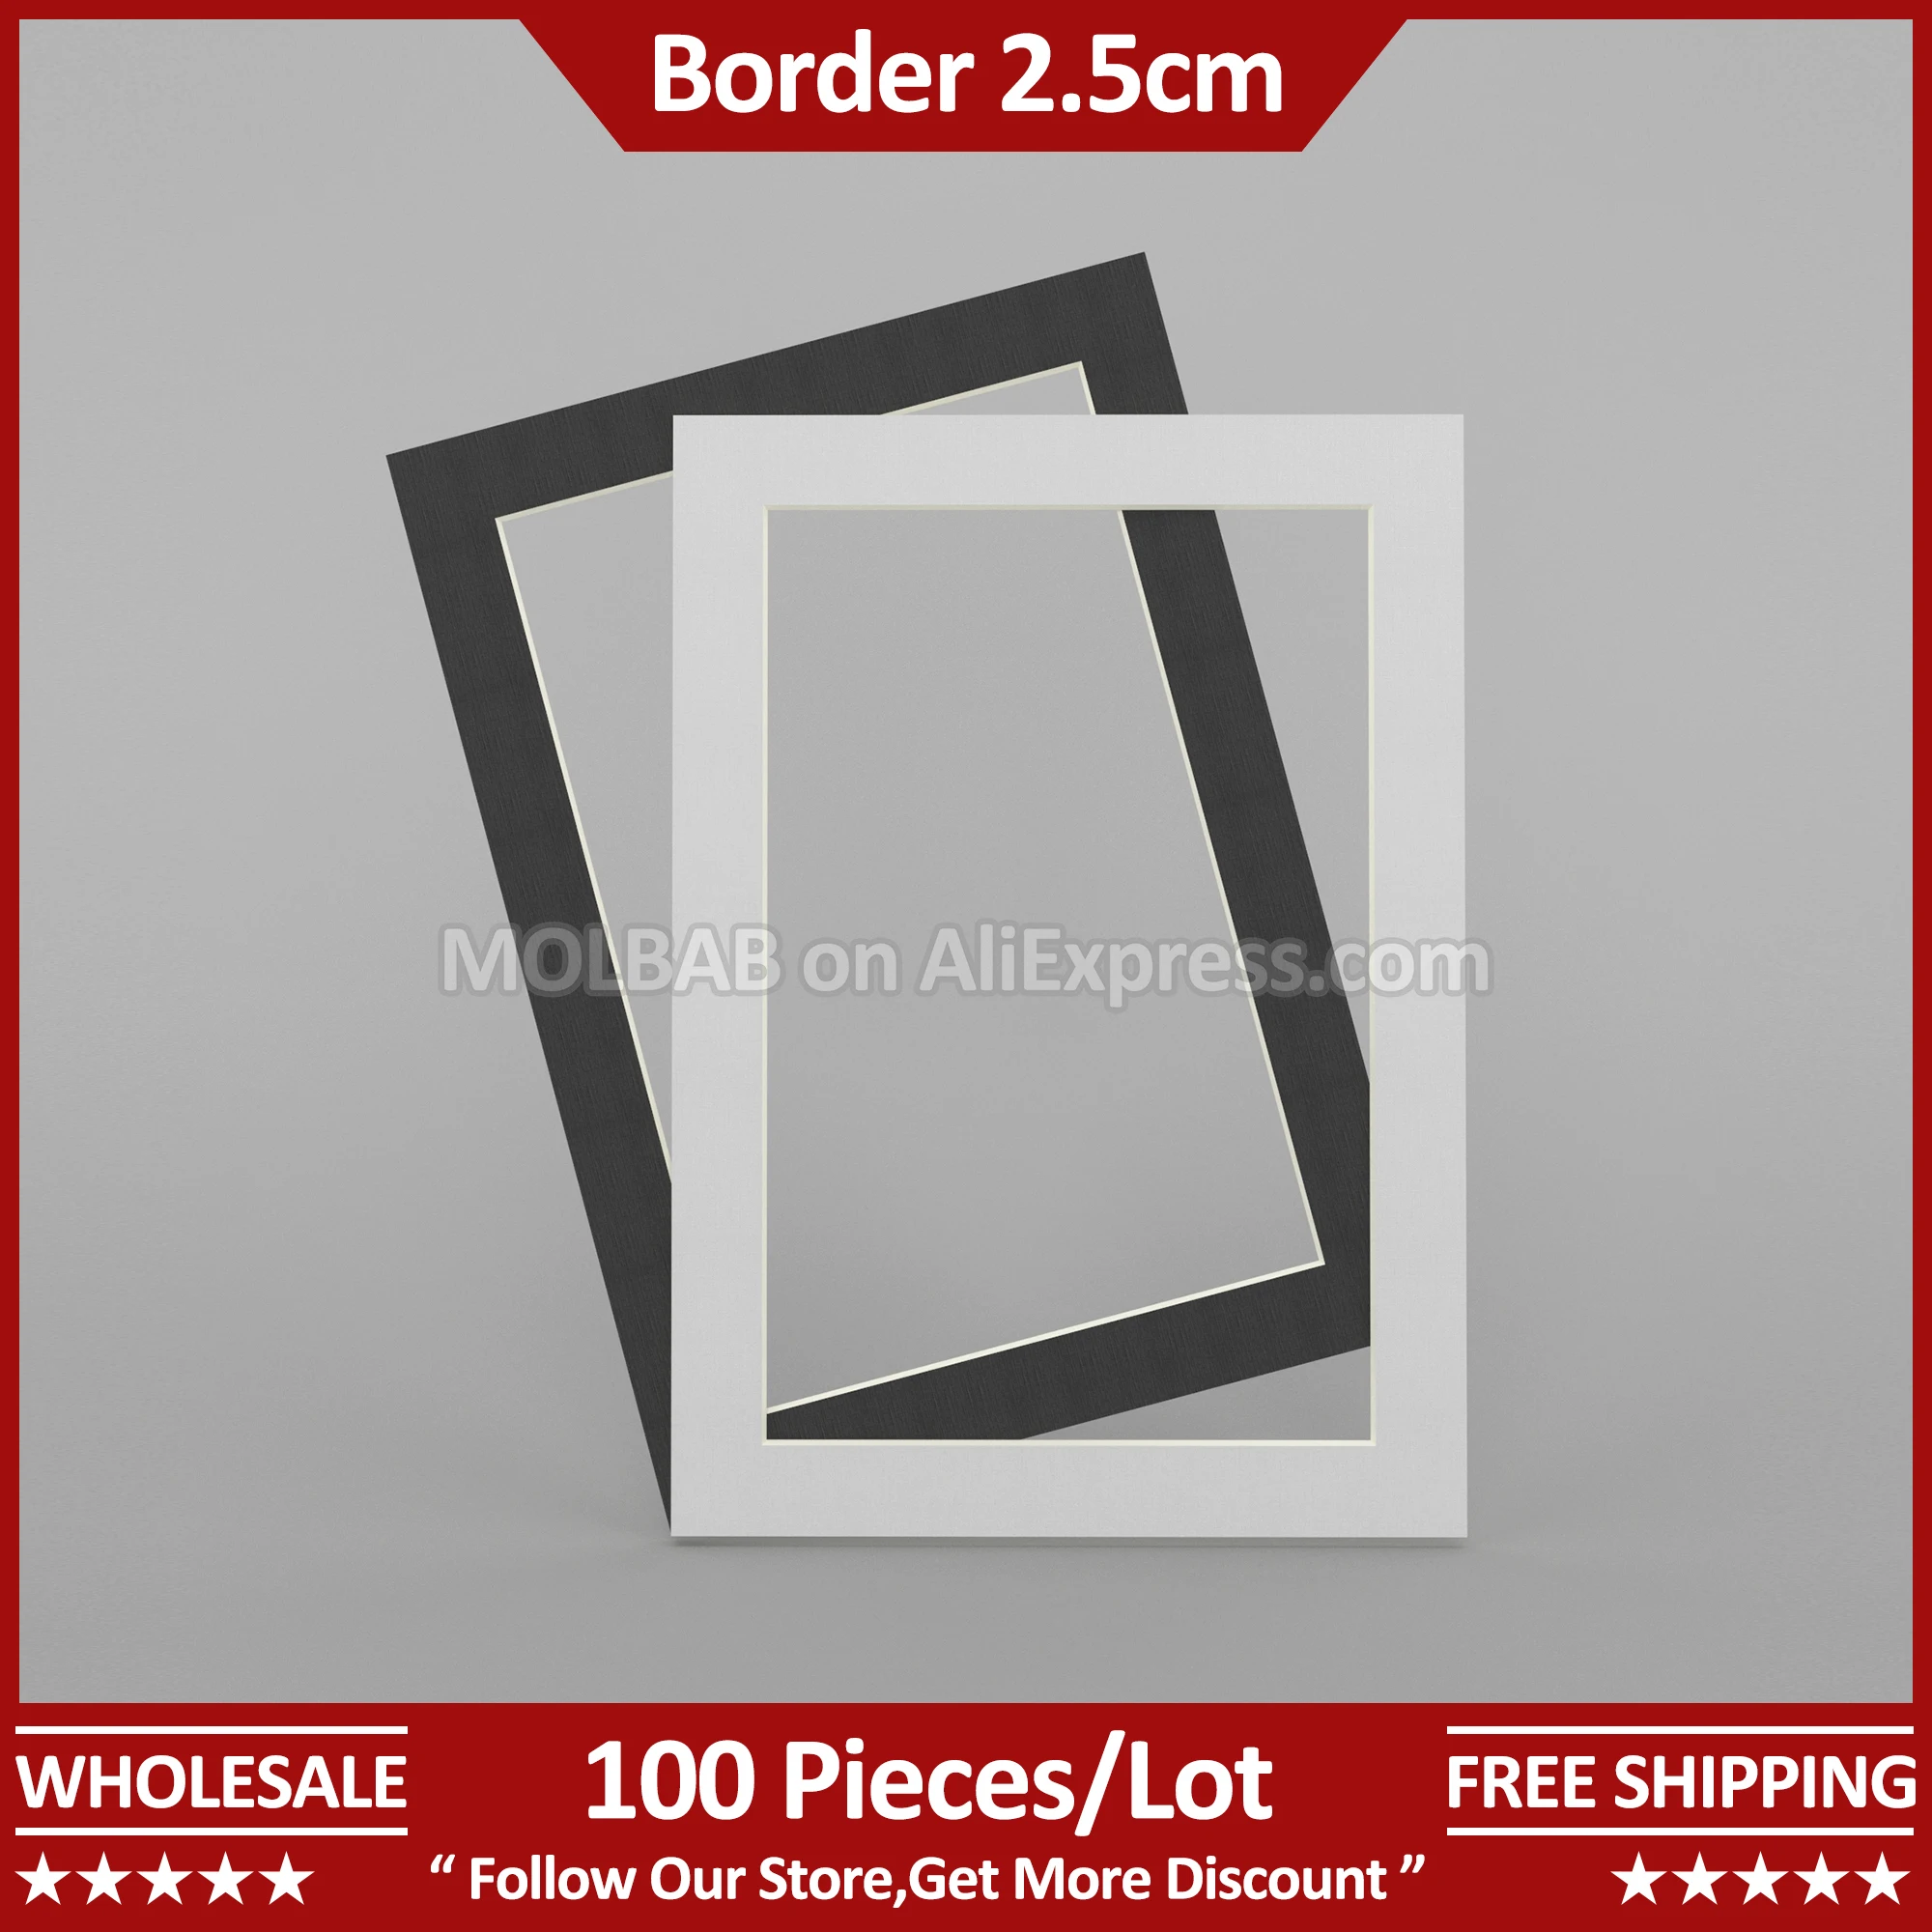 

A4 Photo Mat Border 2.5cm White/Black Paperboard Picture Passe-partout Frame Mounting Decoration Wholesale 100 Pieces Per Lot